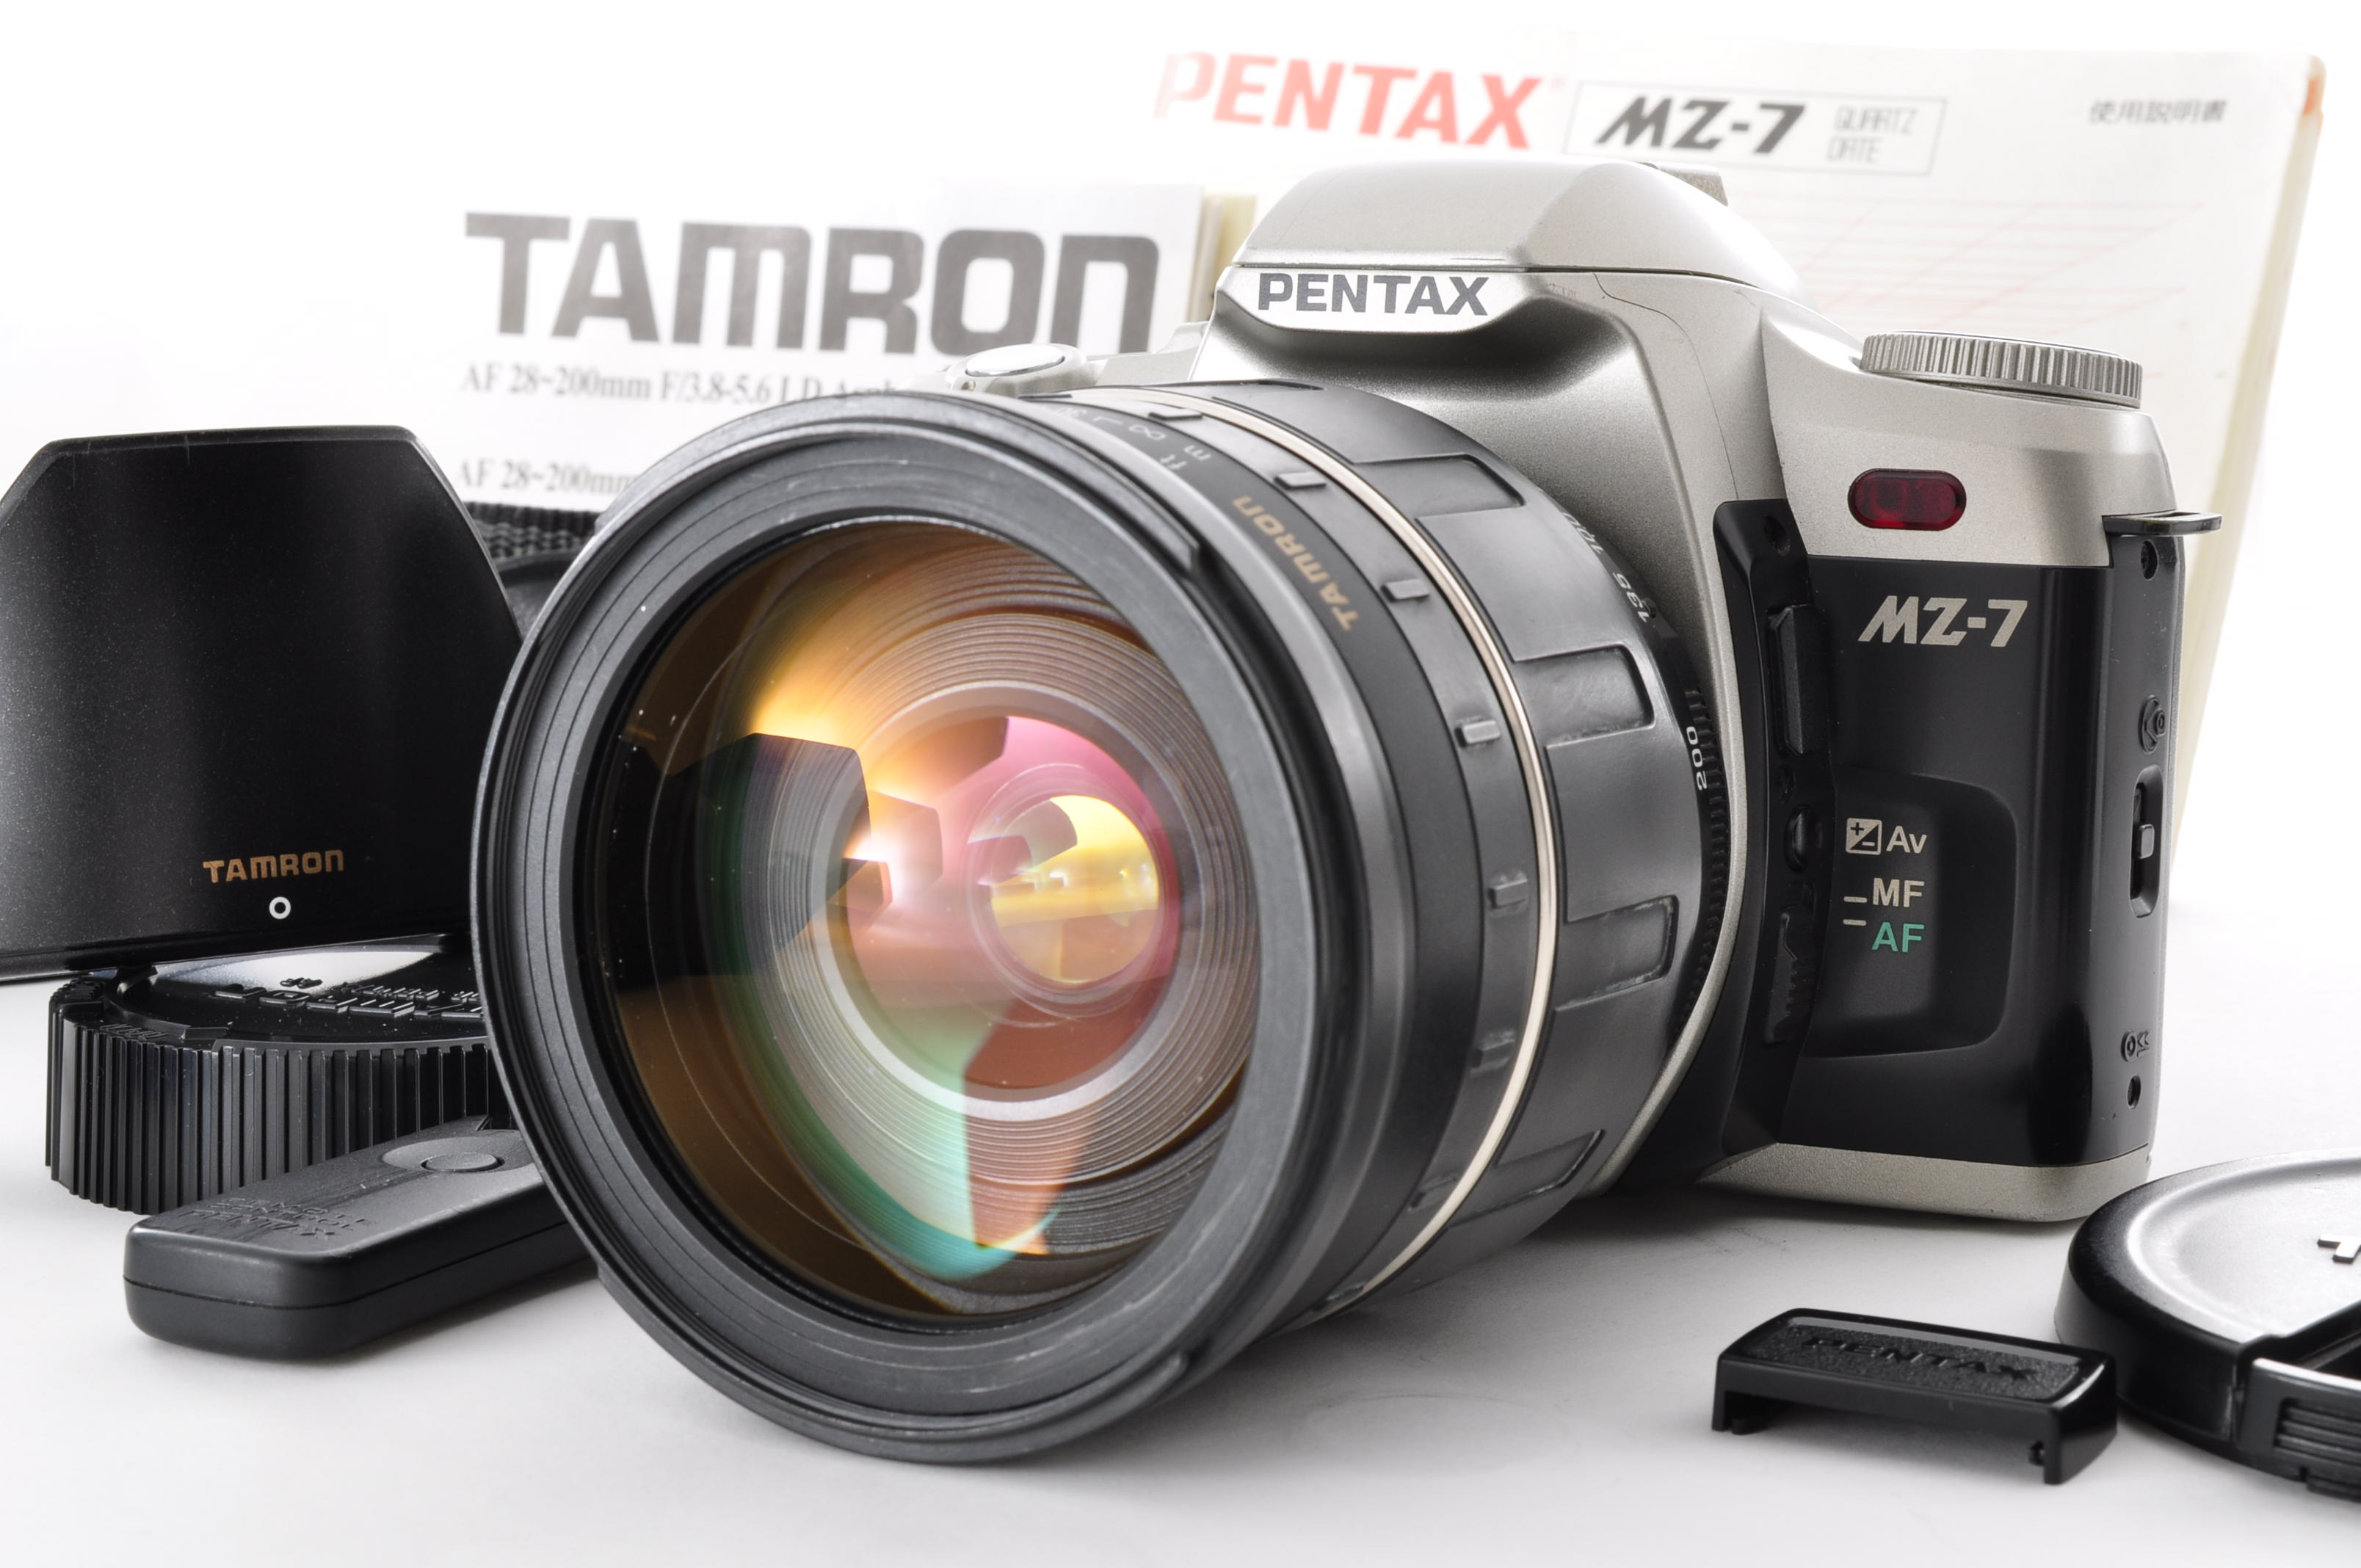 PENTAX MZ-7 35mm Film Camera [Near Mint] + Tamron 28-200mm F3.5-5.6 From Japan img01